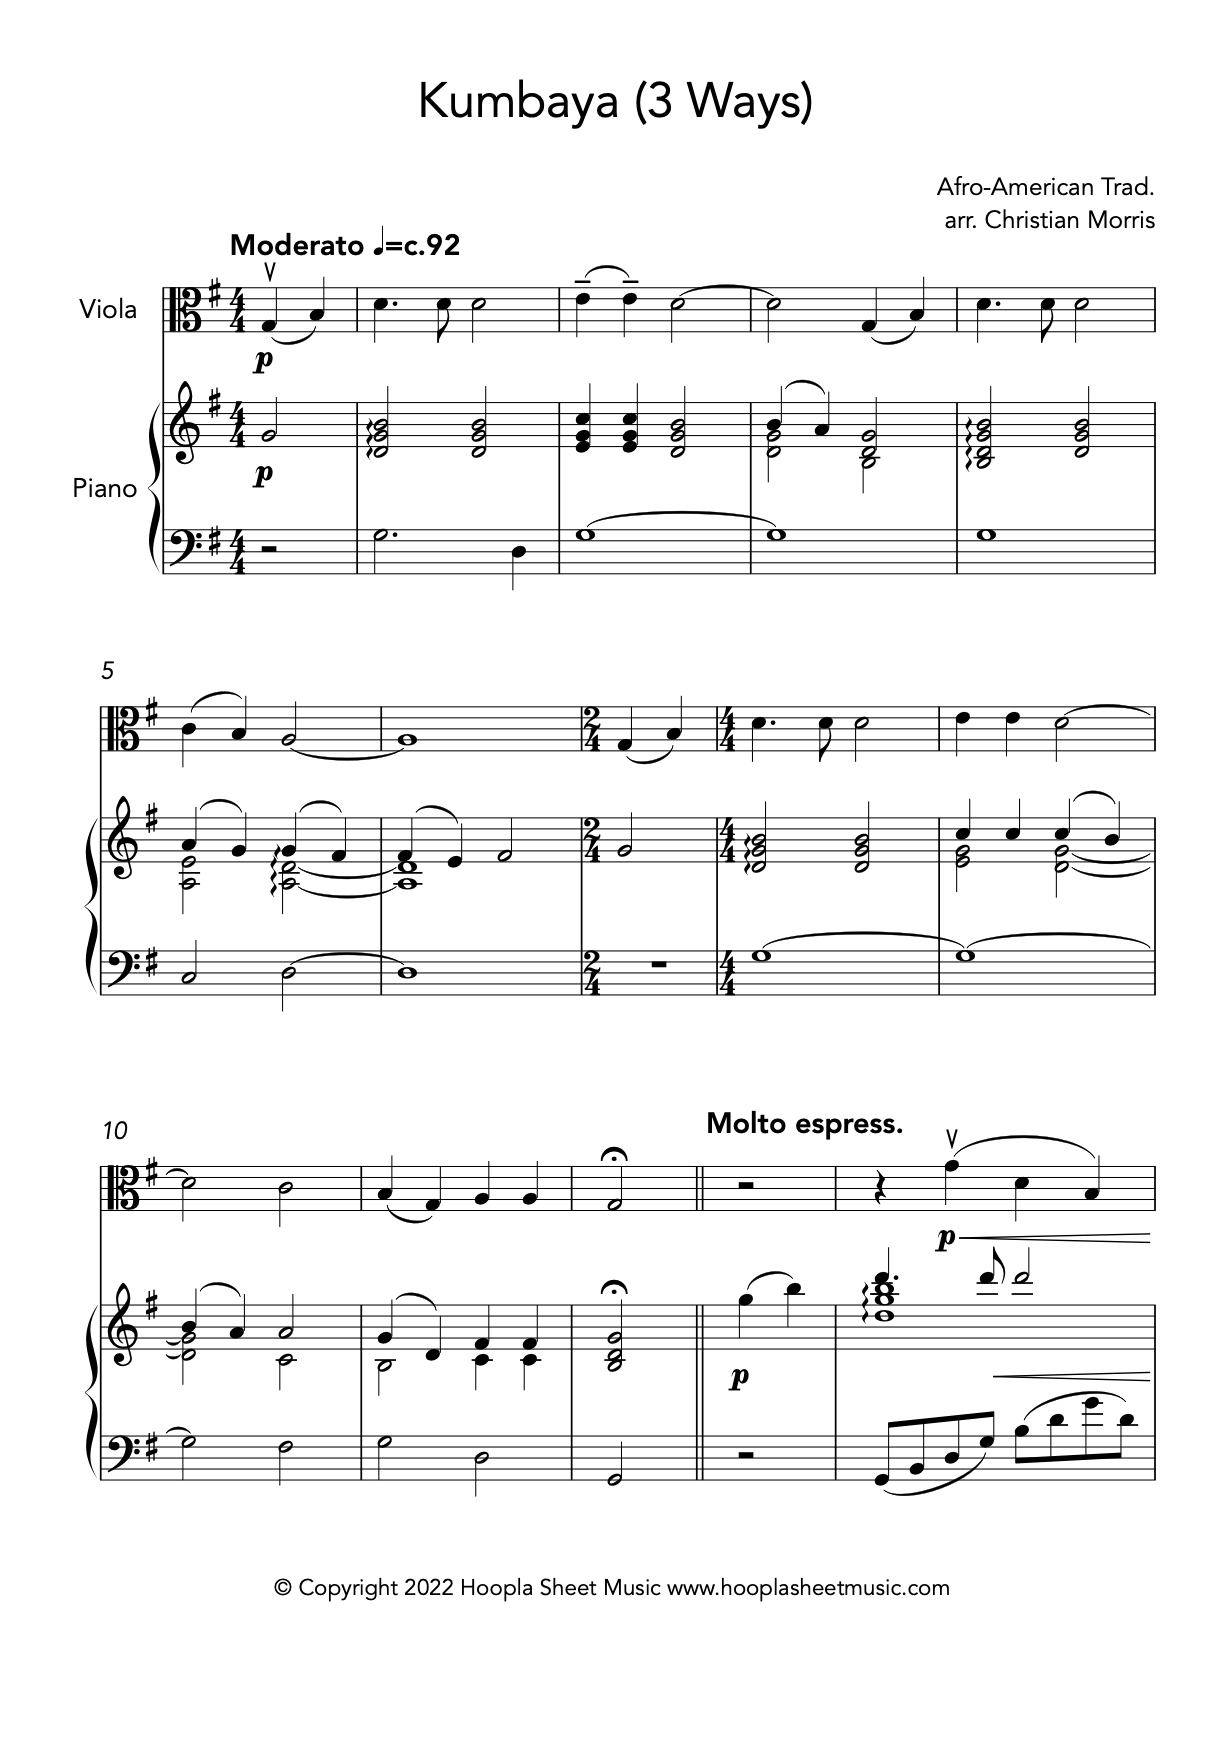 Kumbaya (Viola and Piano)